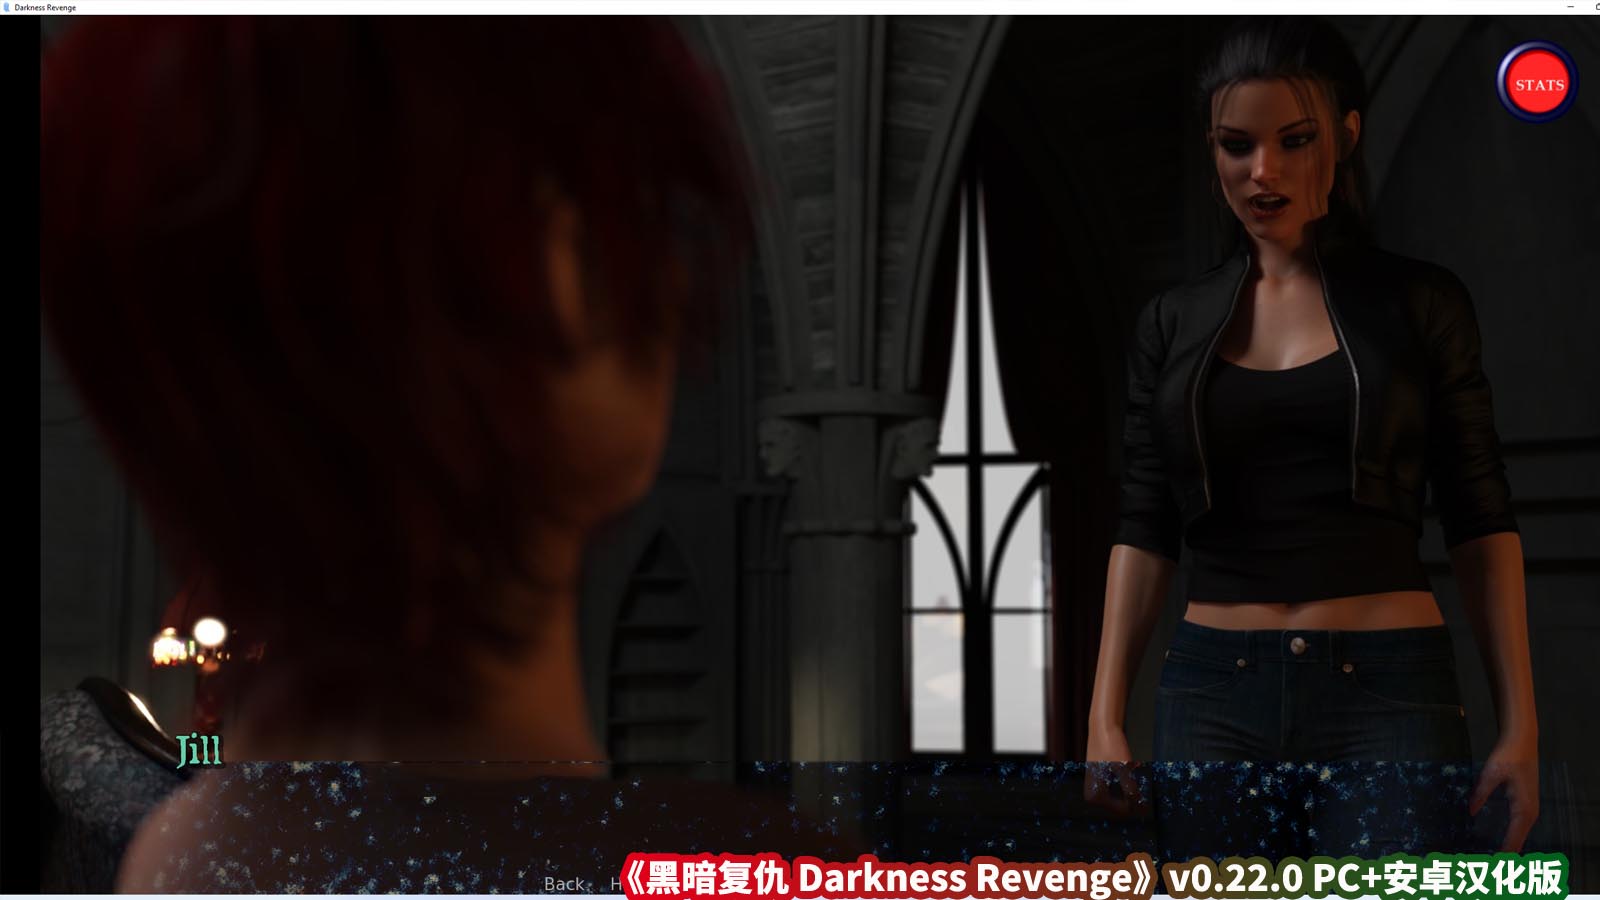 欧美画风slg游戏《黑暗复仇 Darkness Revenge》v0.22.0 PC+安卓汉化版[百度云下载]